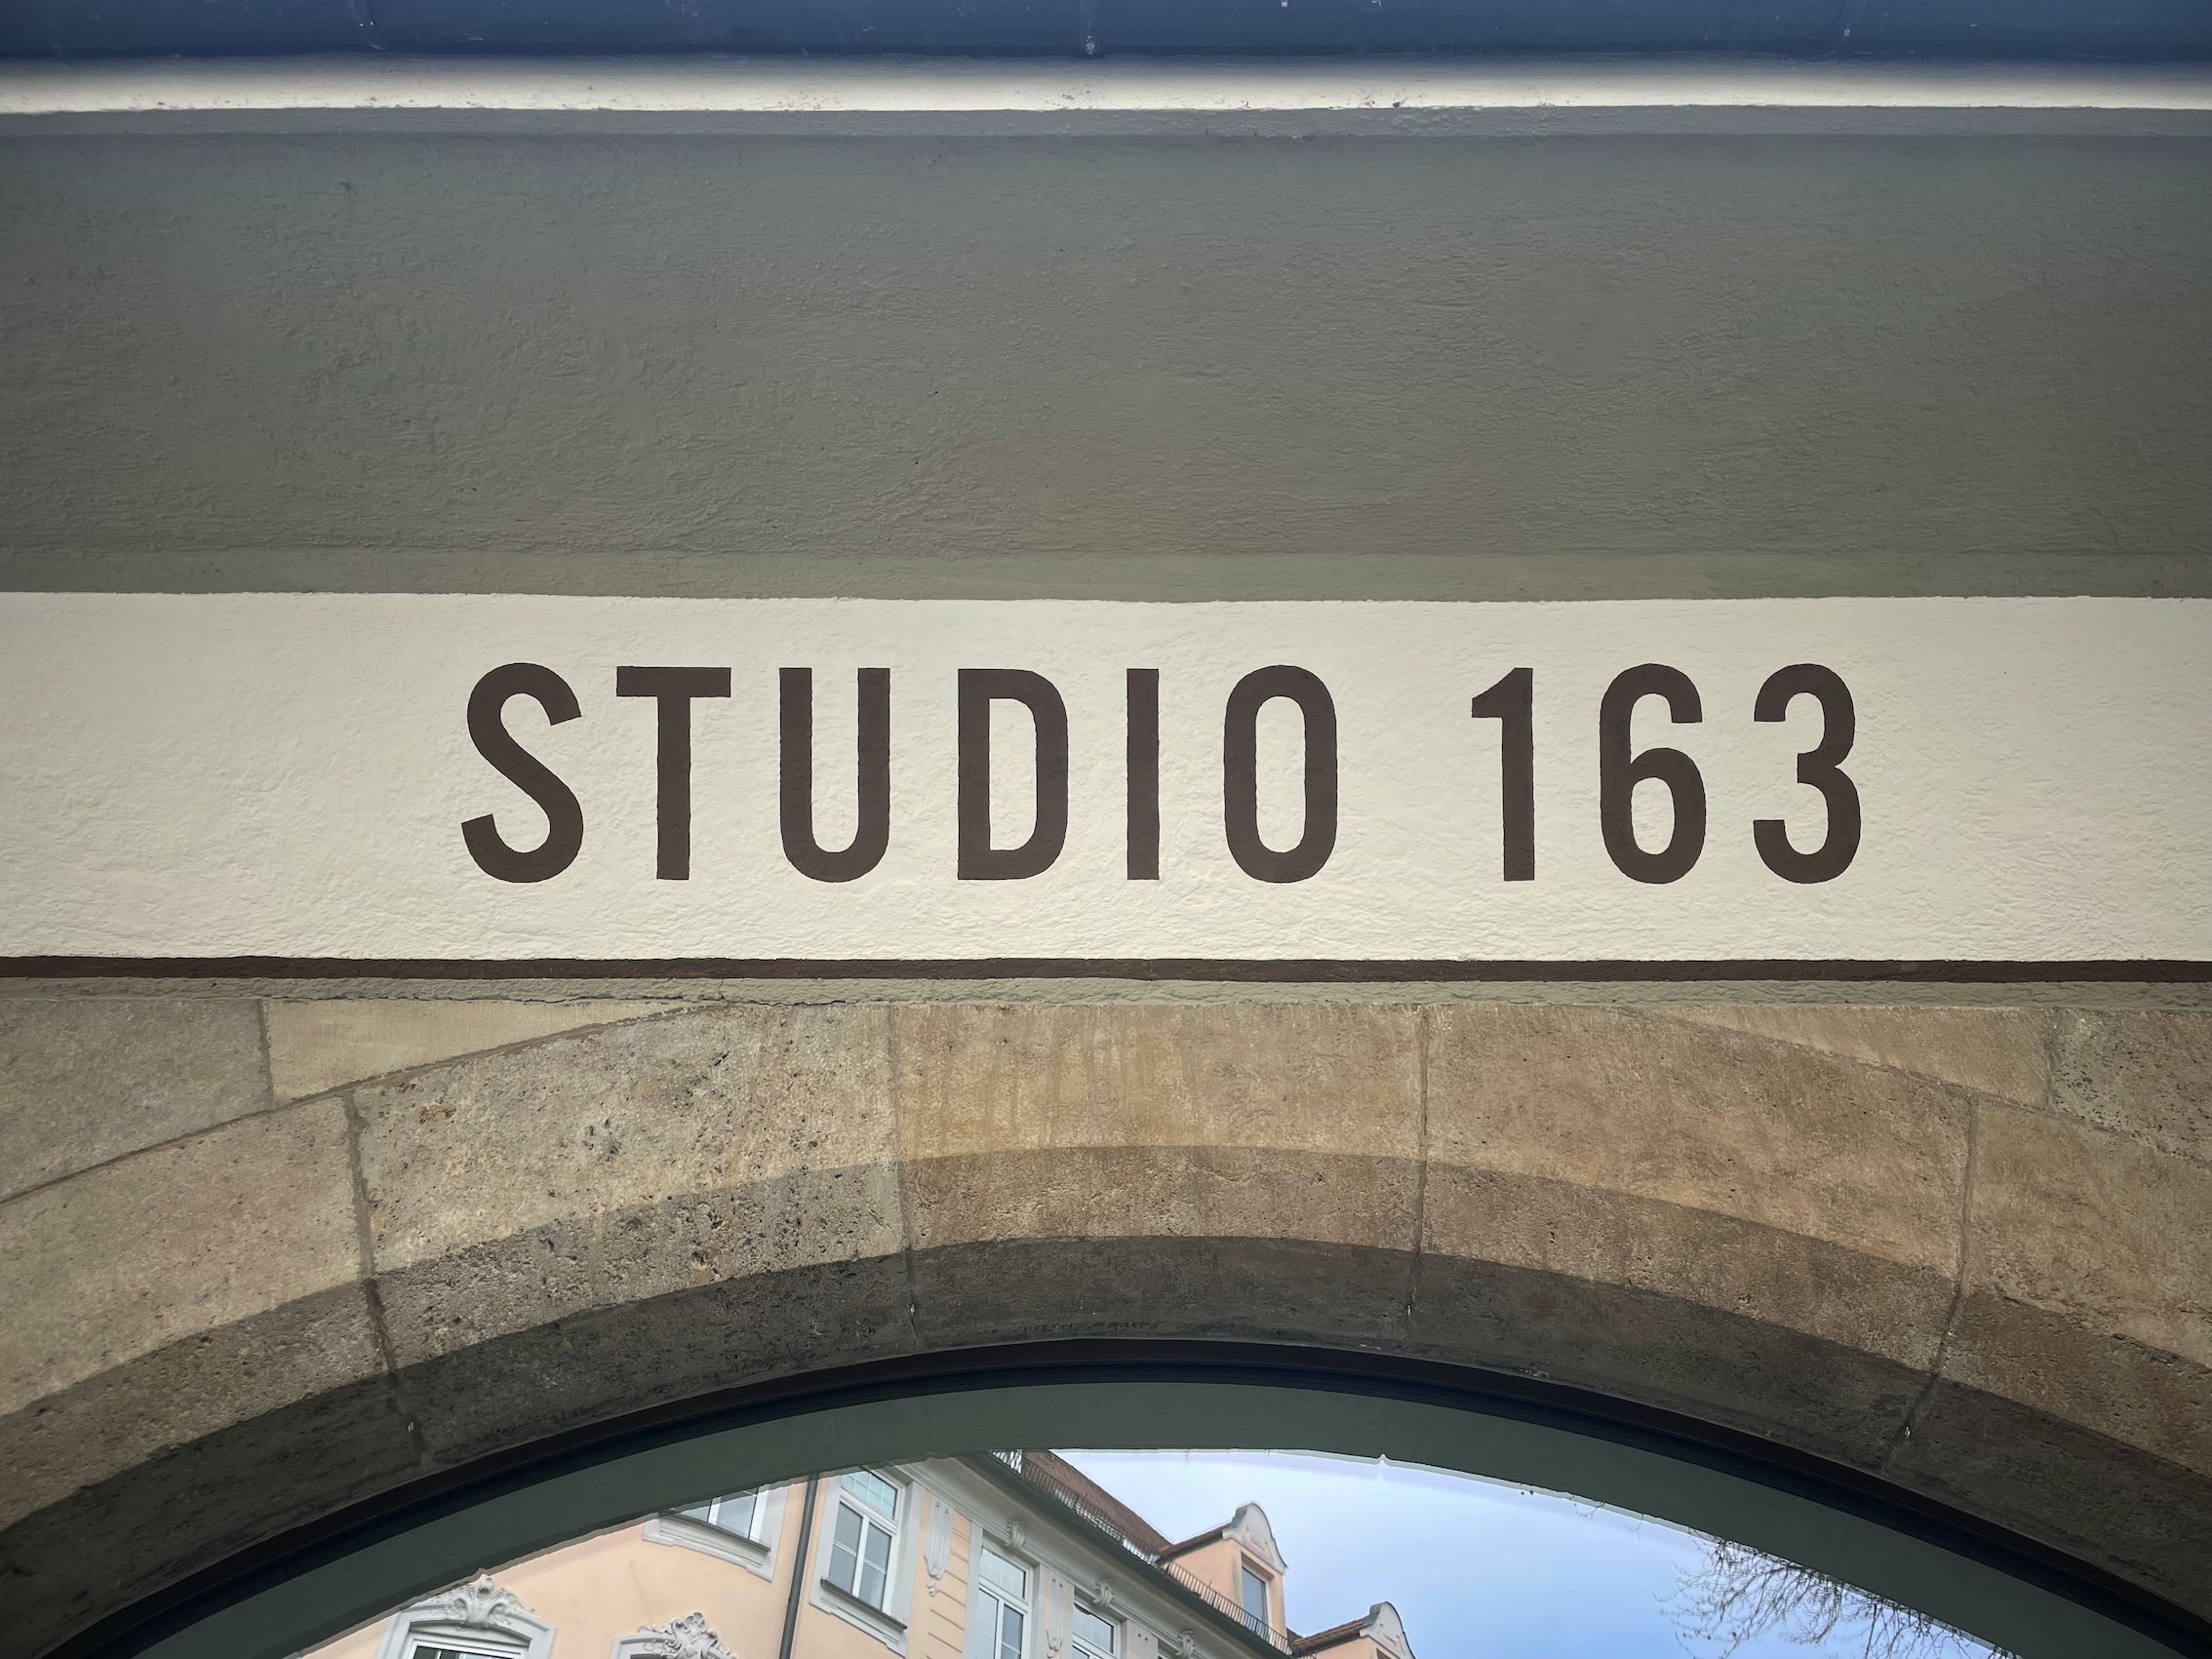 Ruffini Haus - München - Studio 163 - finest Cashmere